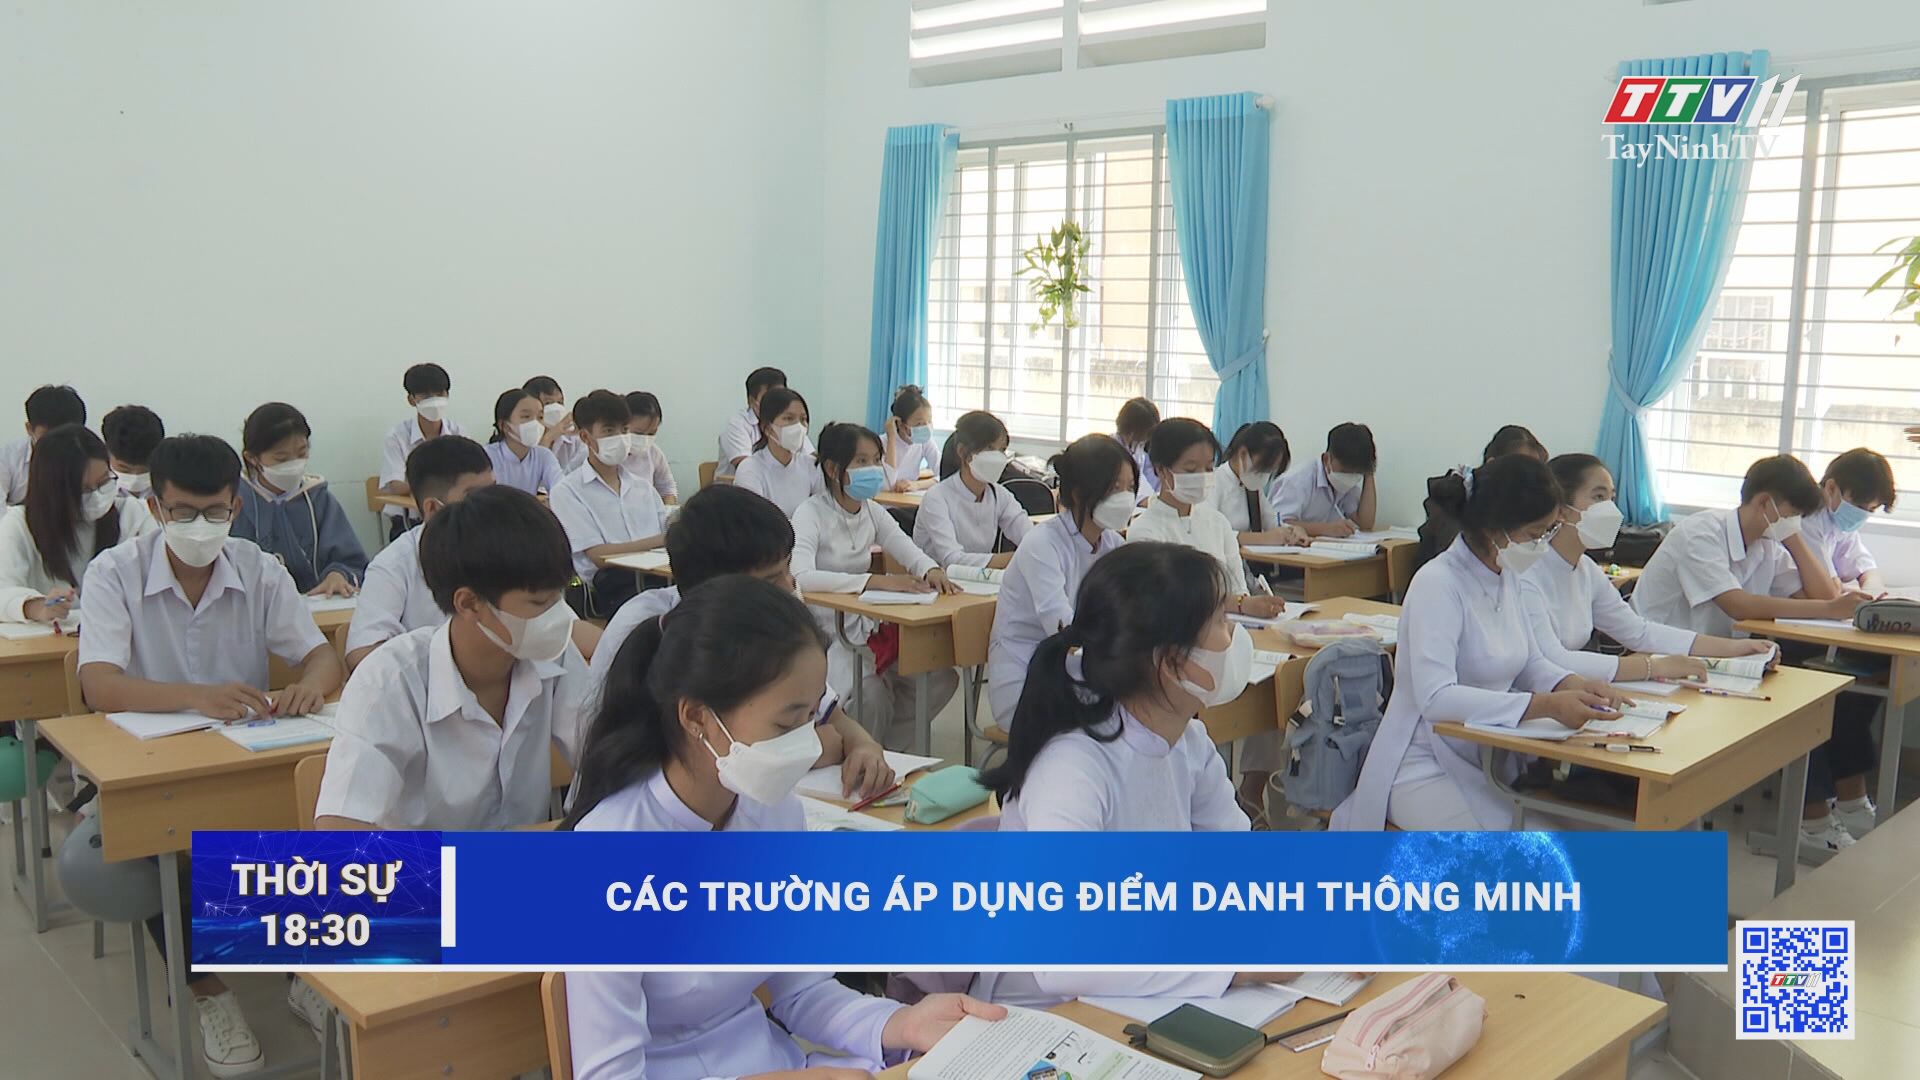 Các trường áp dụng điểm danh thông minh | TayNinhTV